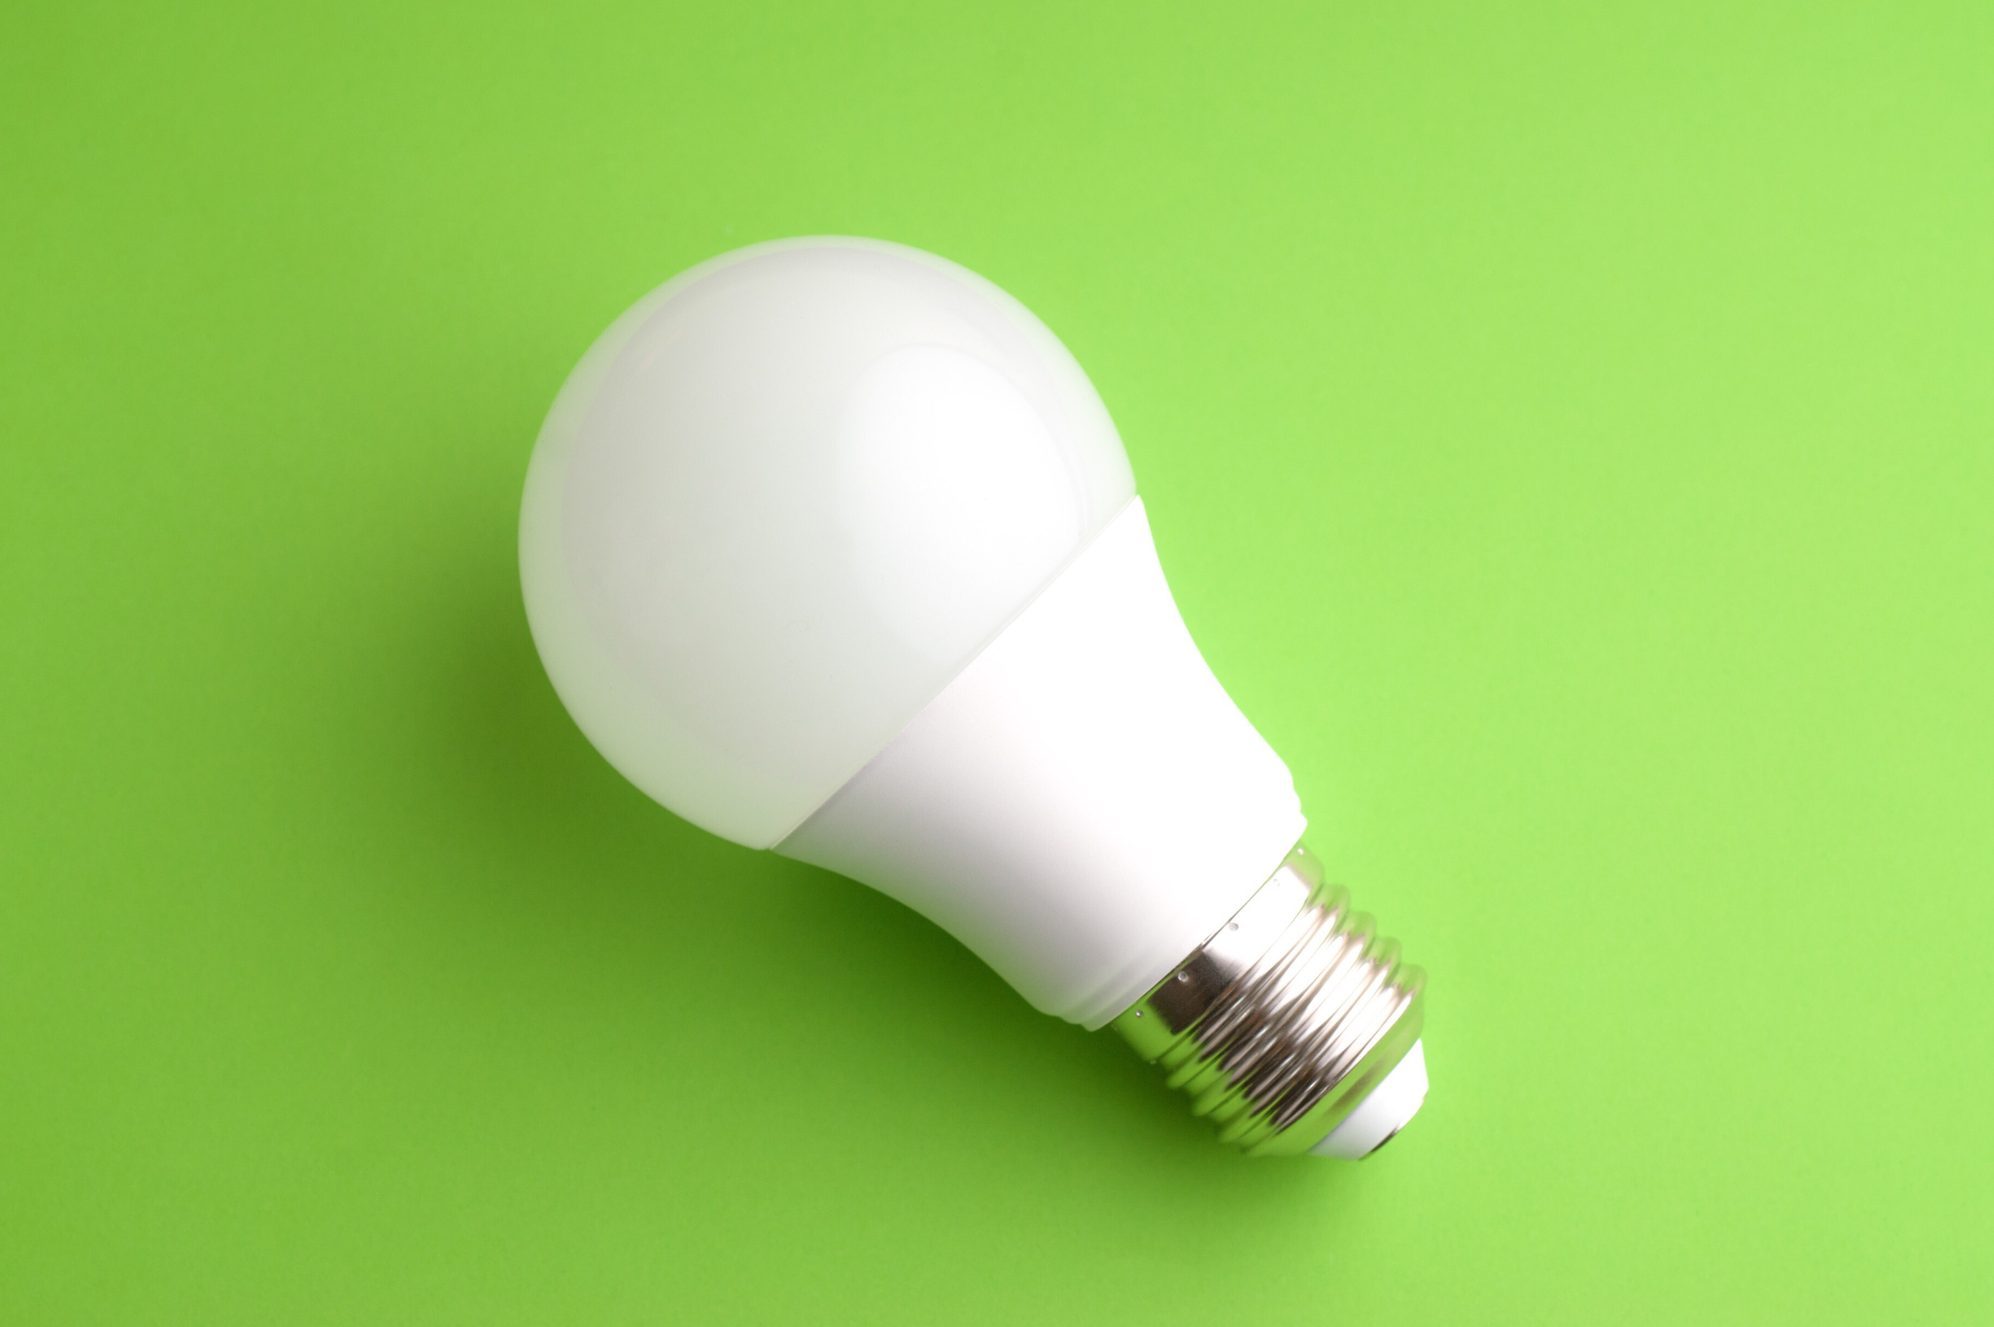 White led light bulb on green background